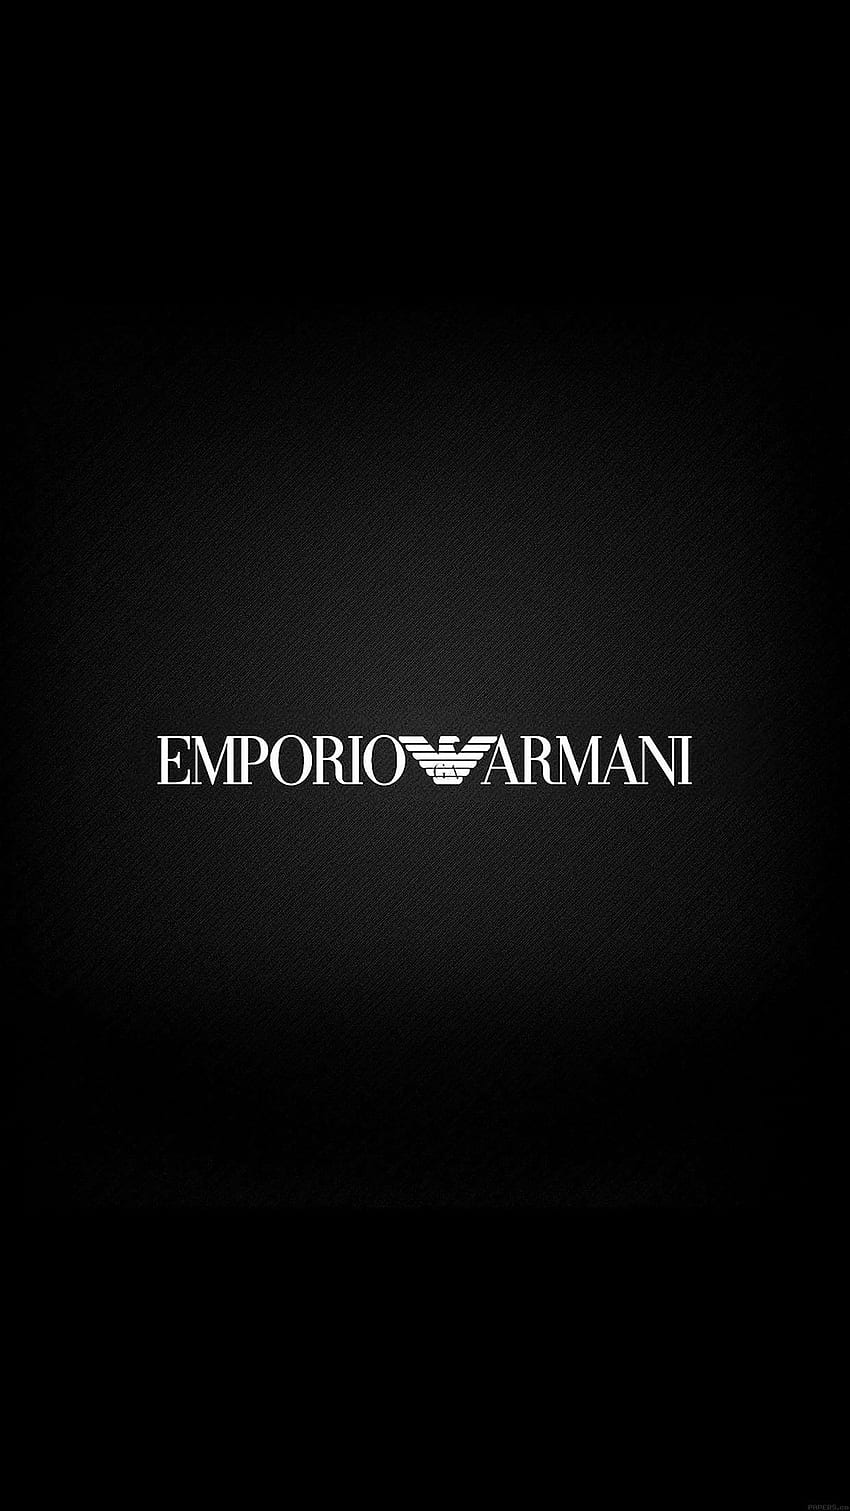 Armani Exchange Wallpaper